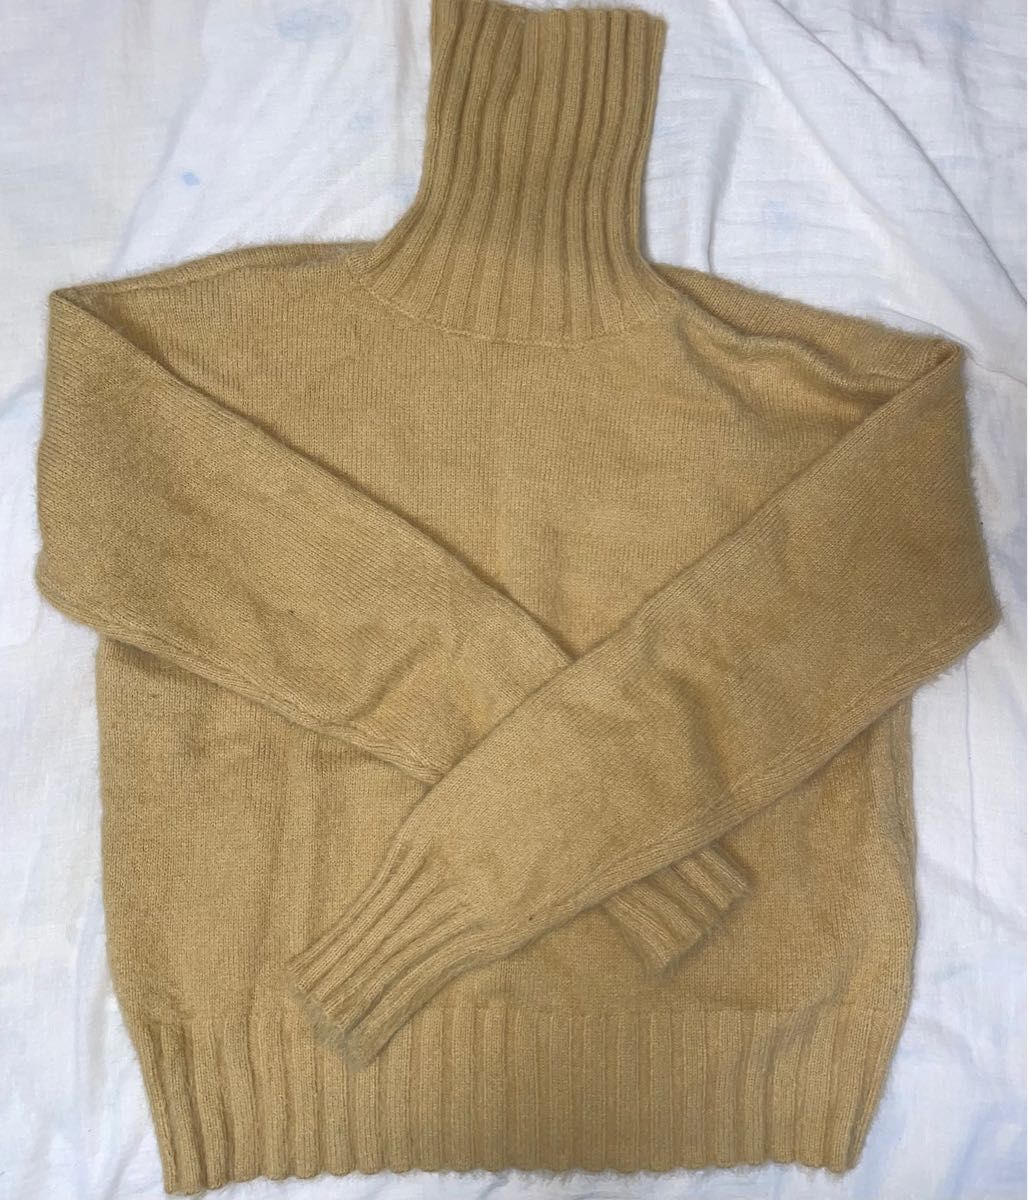 タートルネックセーター